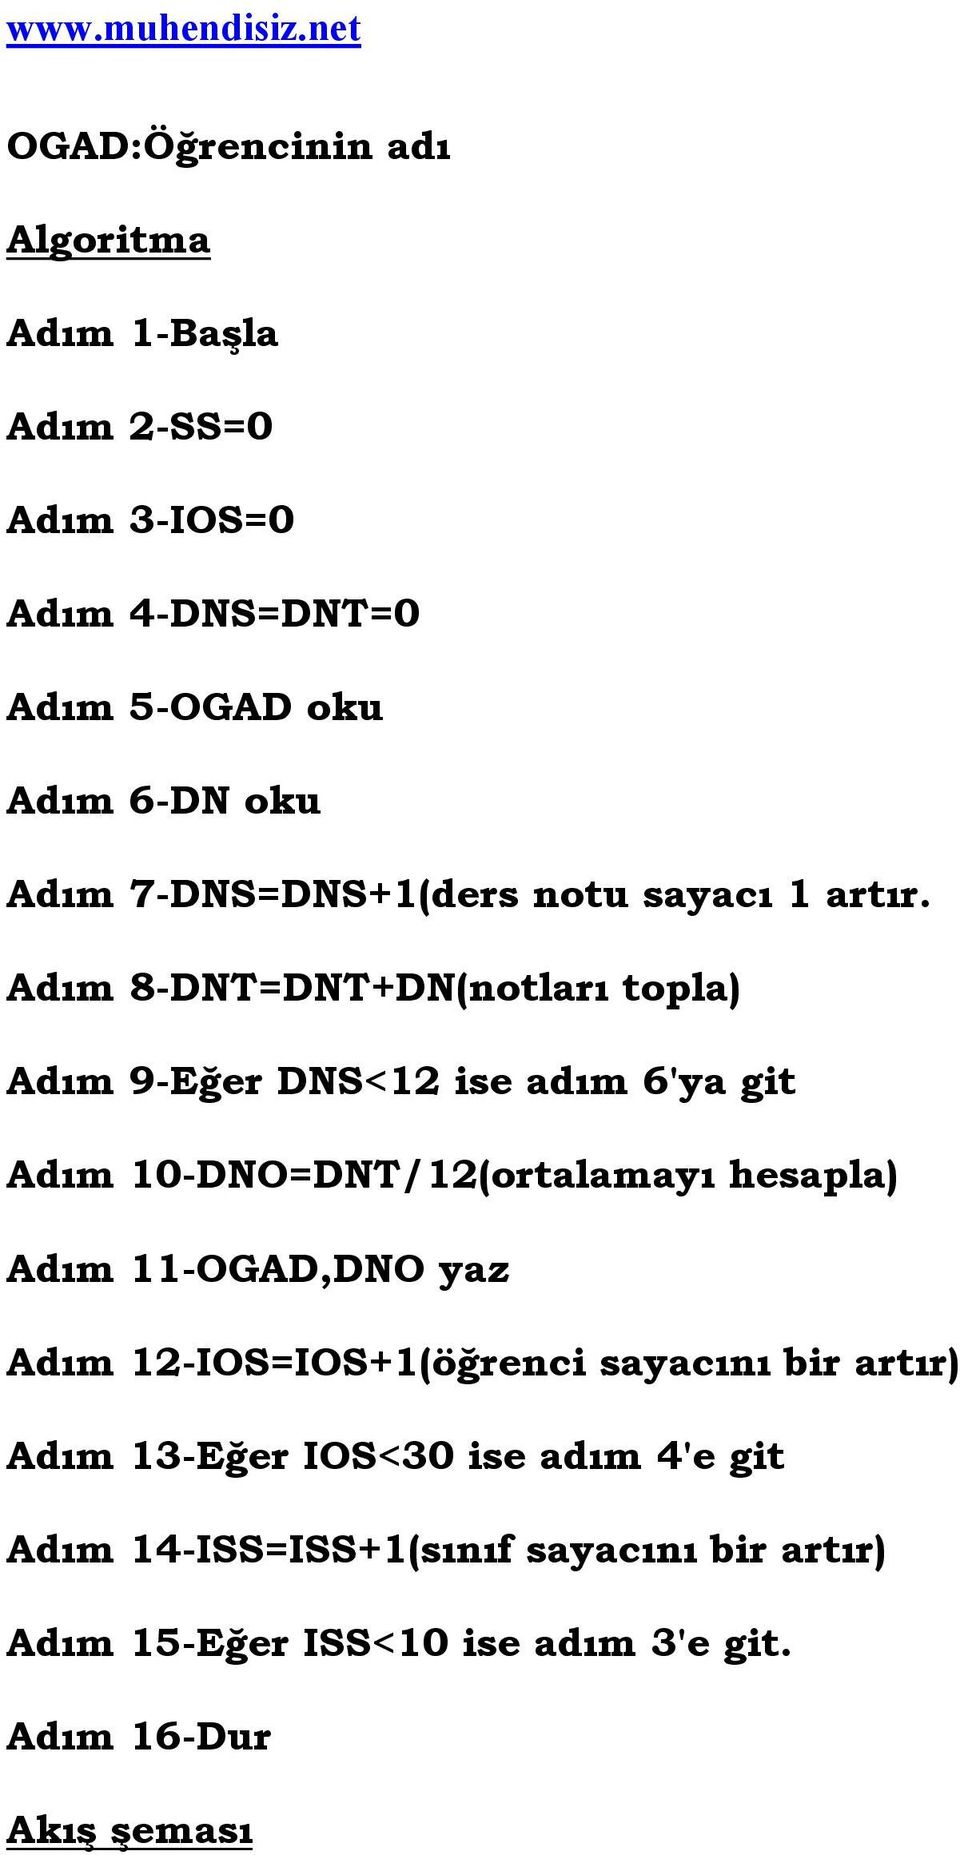 Adım 8-DNT=DNT+DN(notları topla) Adım 9-Eğer DNS<12 ise adım 6'ya git Adım 10-DNO=DNT/12(ortalamayı hesapla) Adım